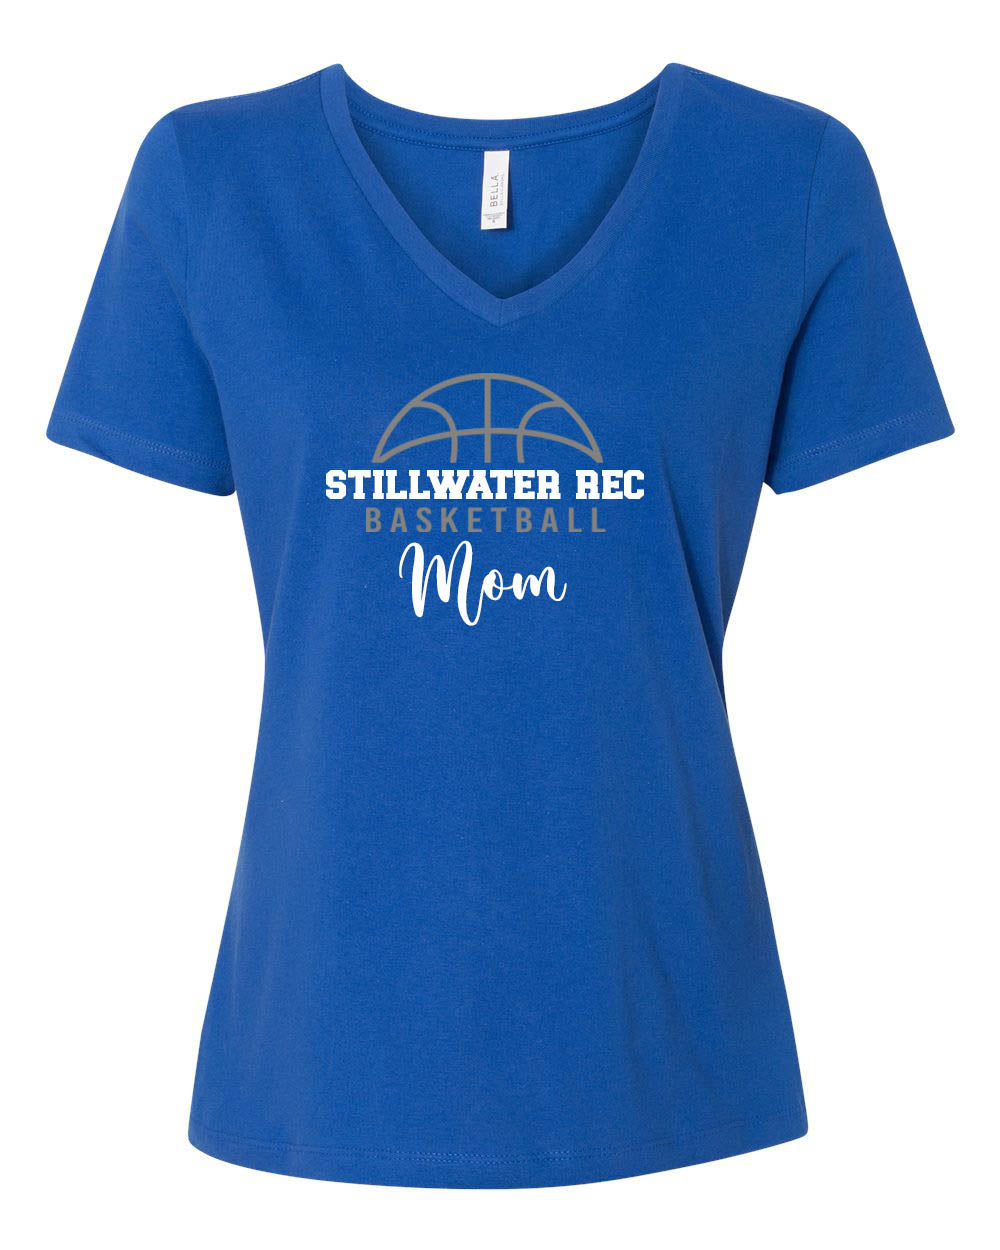 Stillwater Rec Basketball Mom V-neck T-Shirt